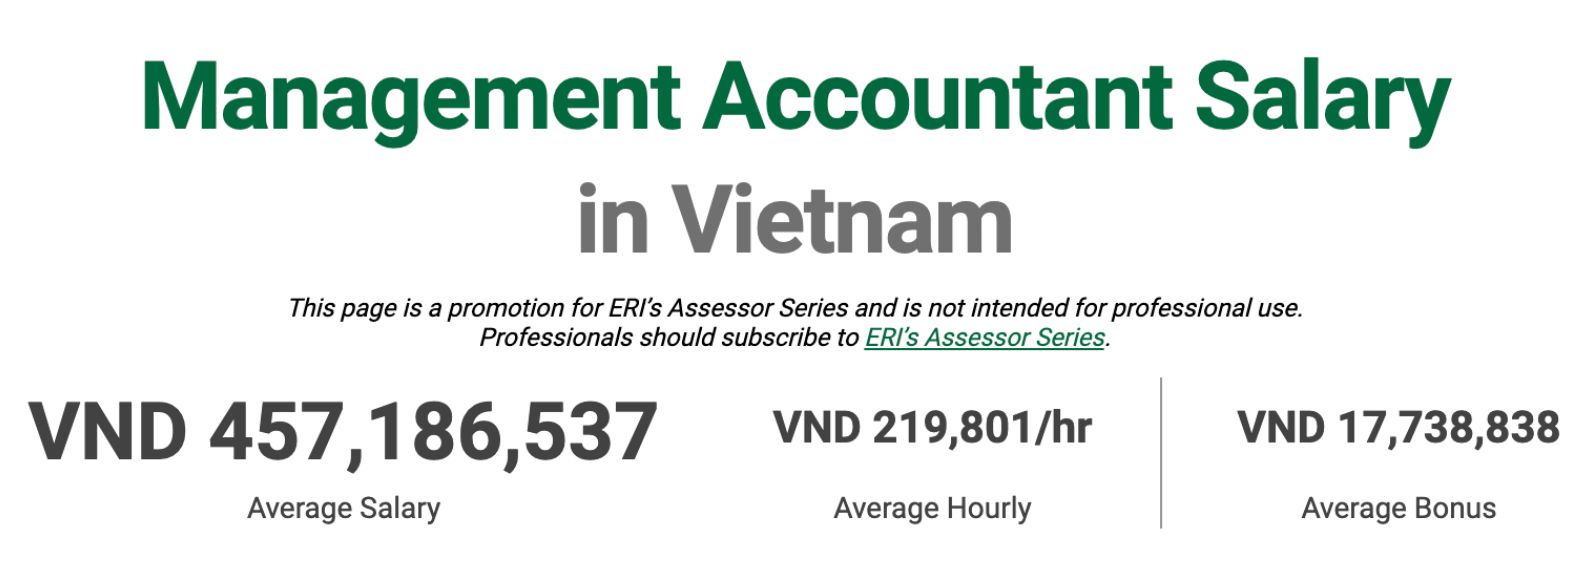 Hay như từ trang tuyển dụng trực tuyến Erieri cũng ghi nhận mức lương dành cho vị trí Kế toán quản trị ở mức 458,845,105 đ/năm.